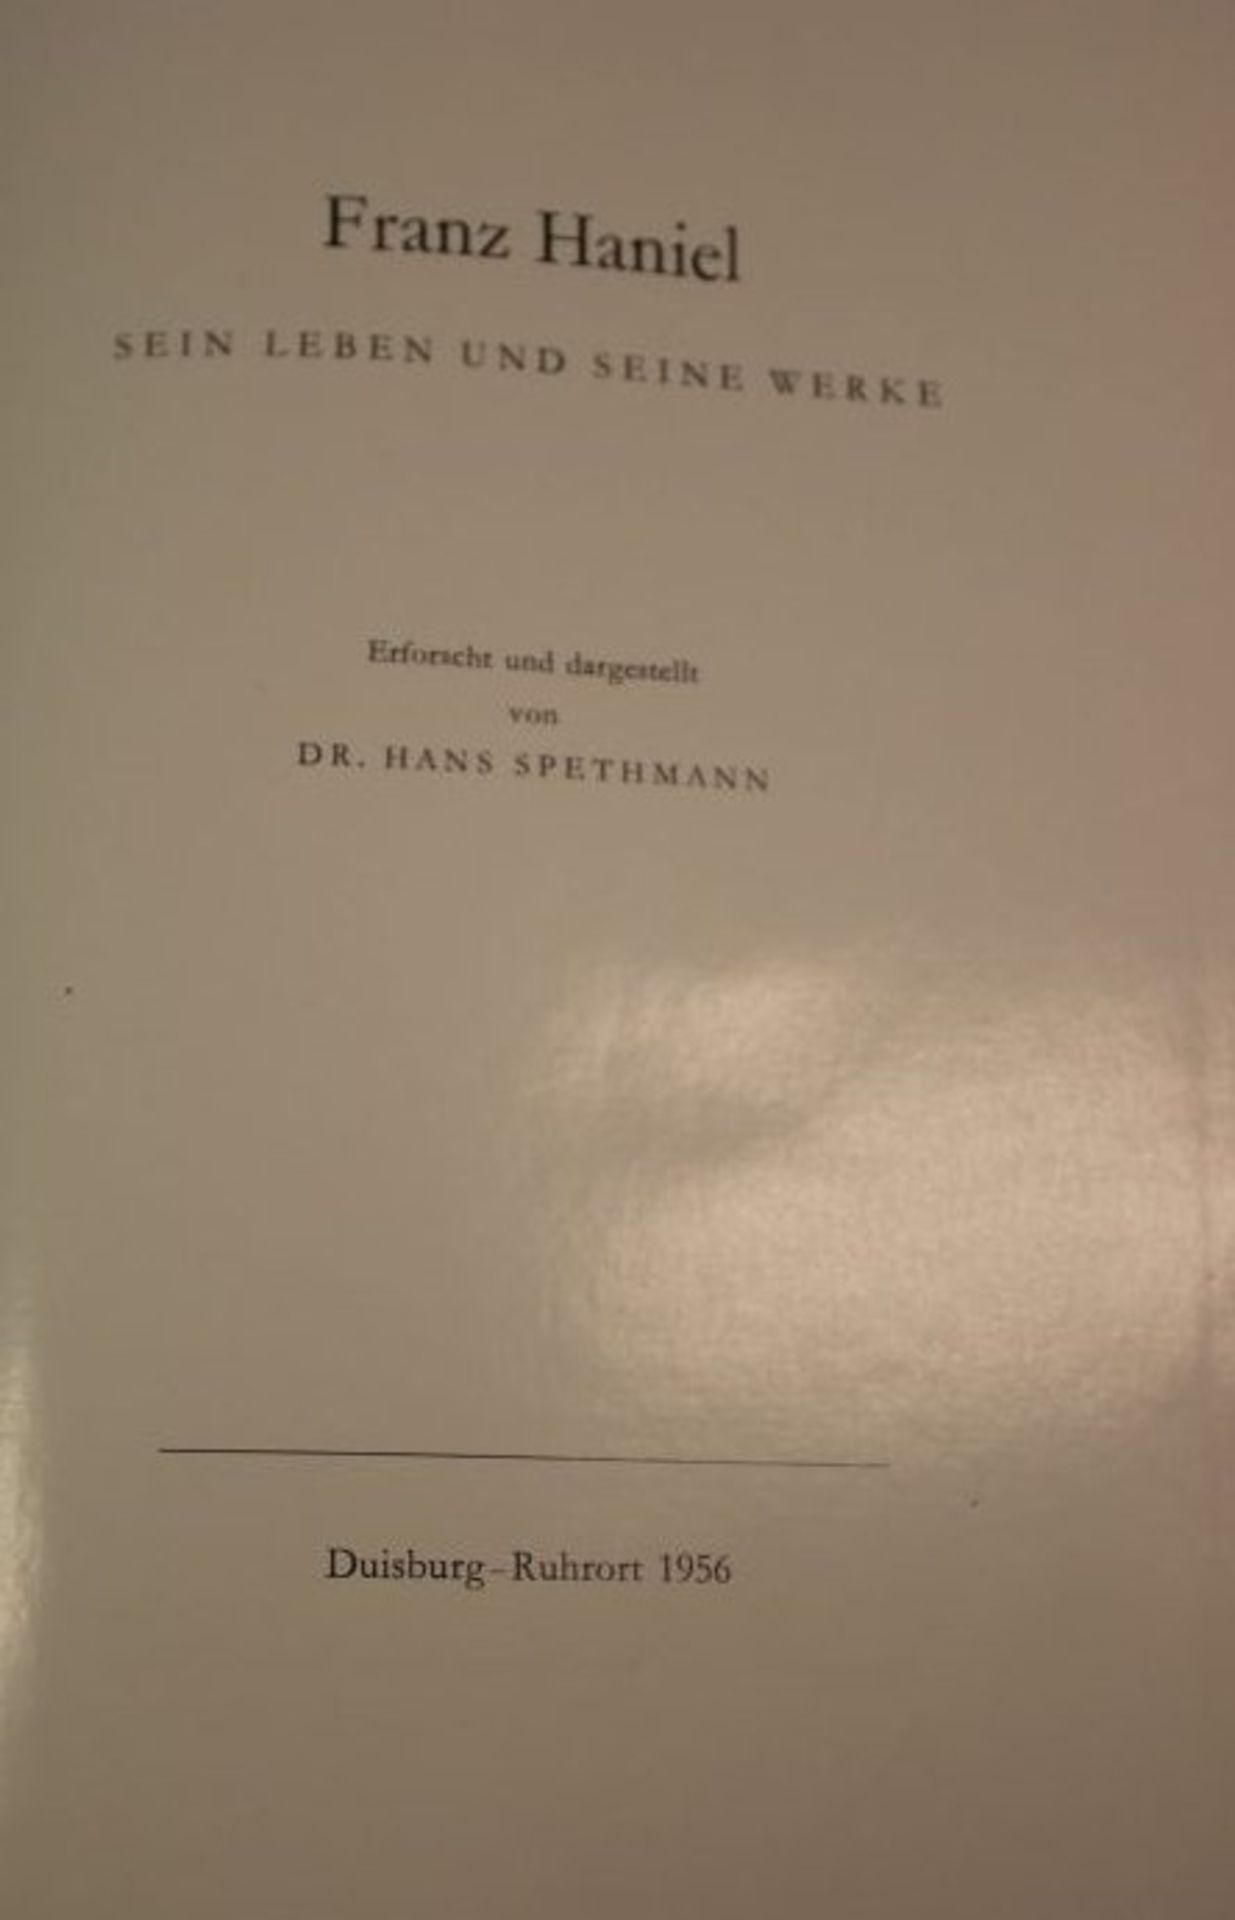 Dr. Hans Spethmann - Franz Haniel Sein Leben und seine Werke, Duisburg 1956. - Bild 2 aus 2